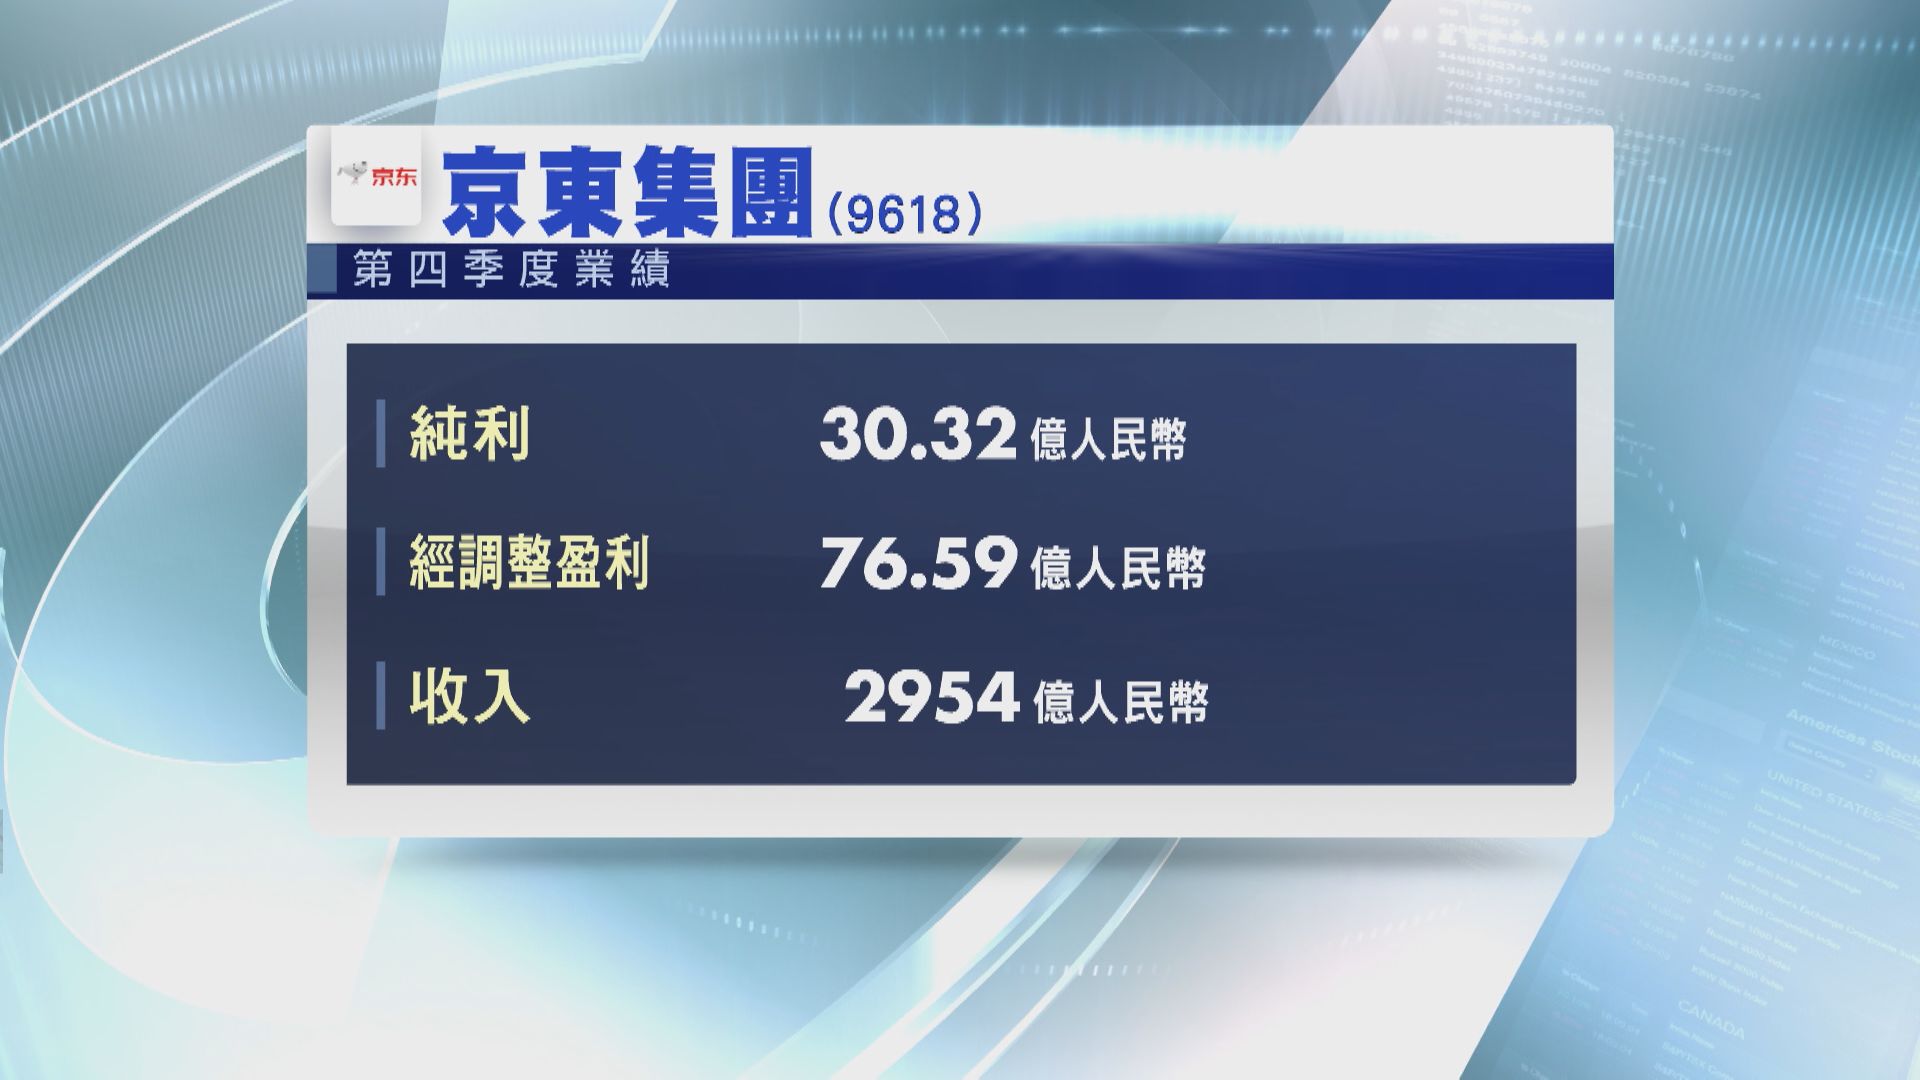 【業績速報】京東上季轉賺30.32億人幣